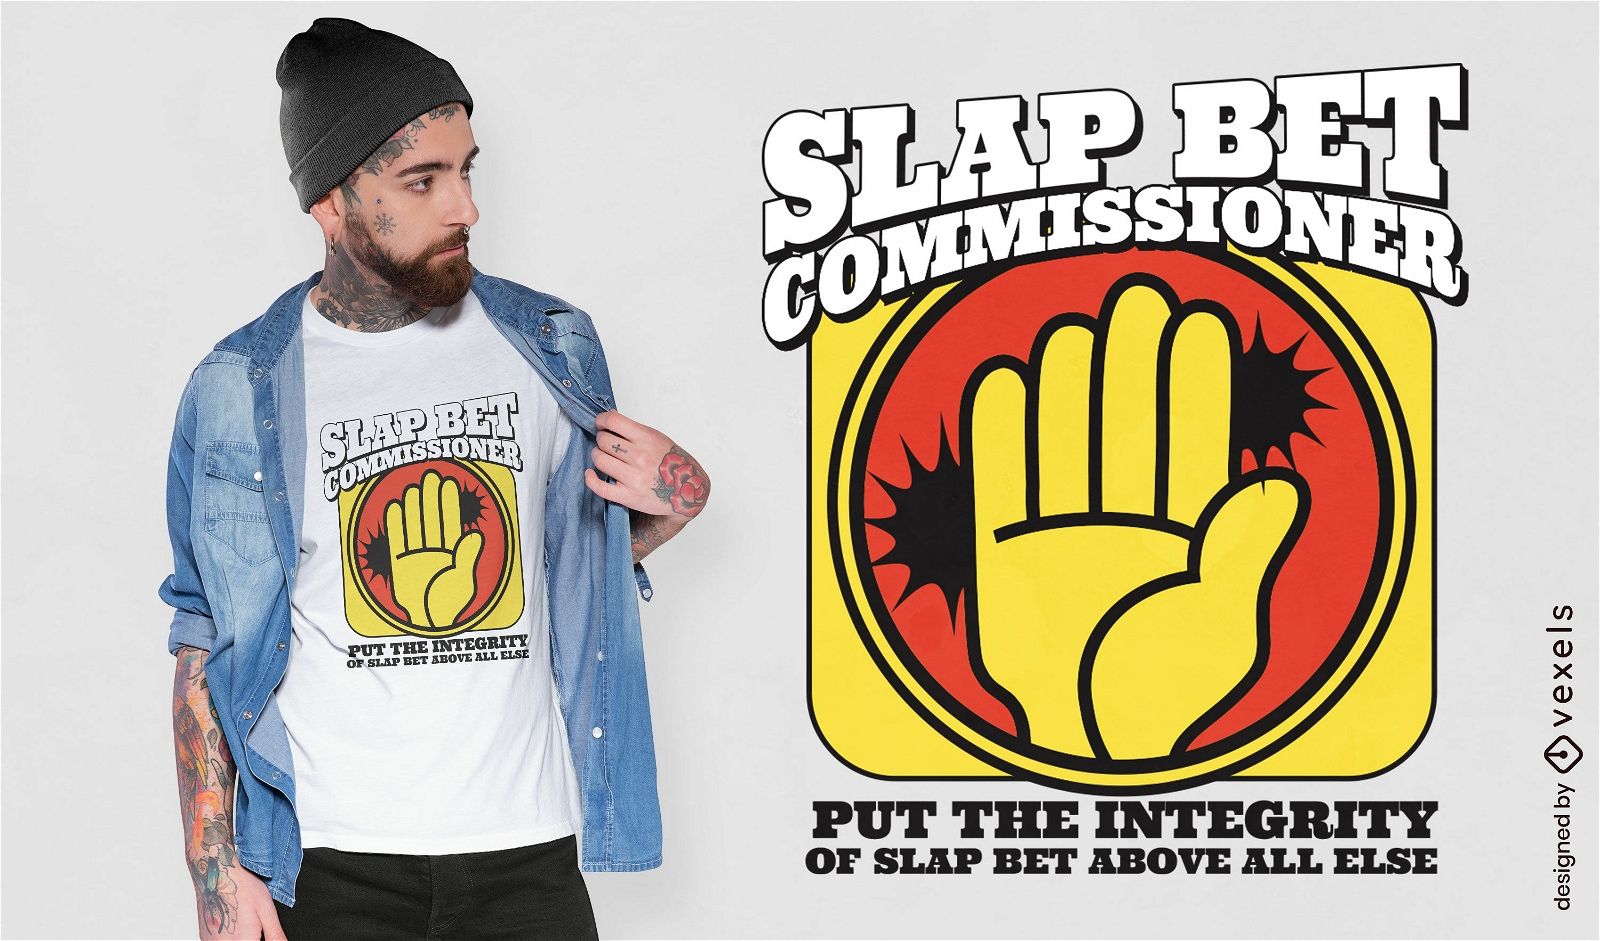 Slap bet comissioner t-shirt design